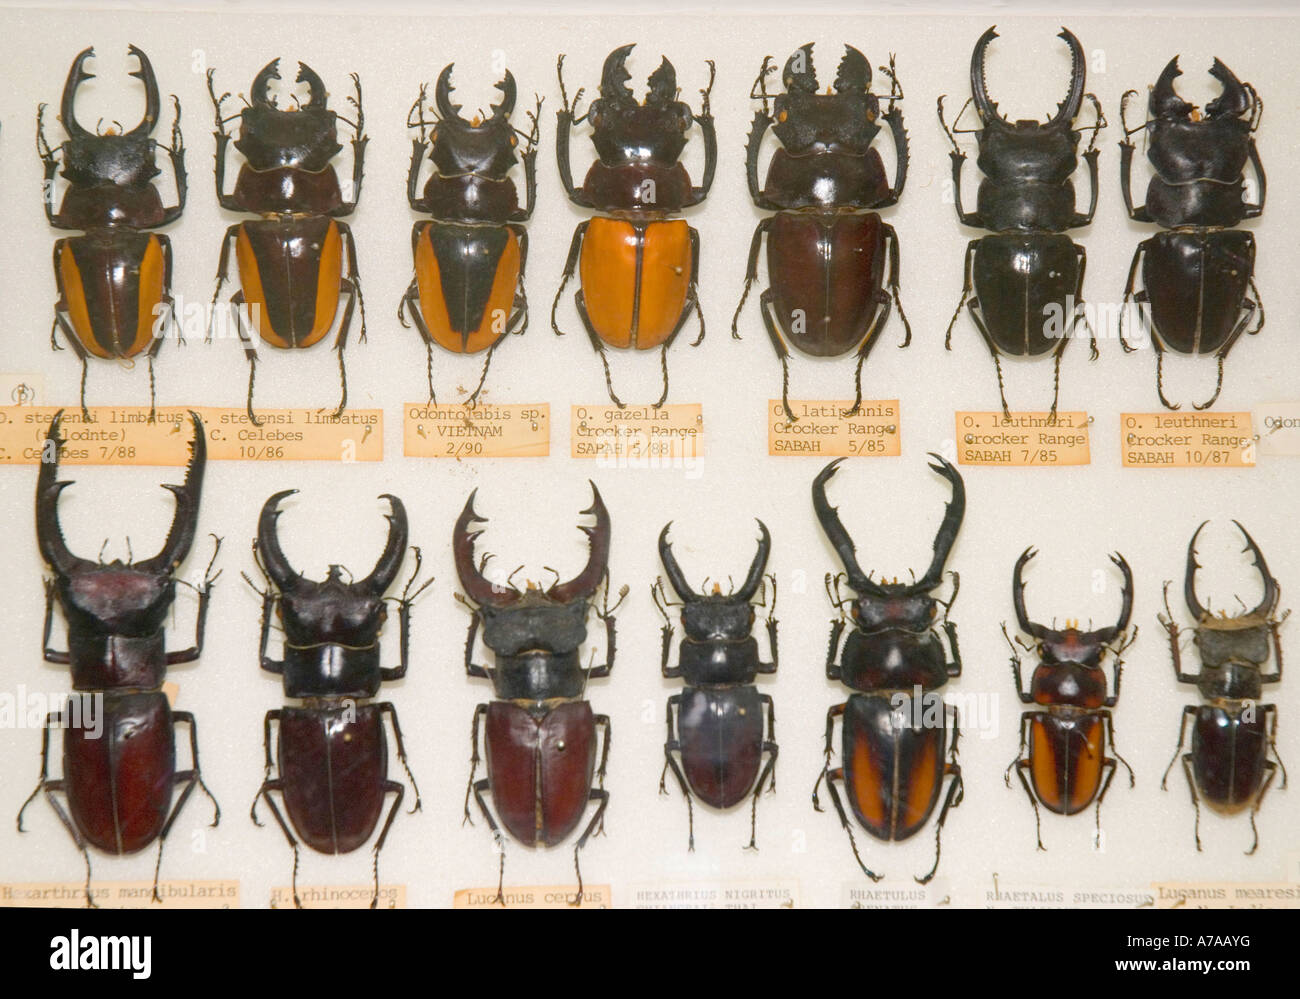 Une collection de musée de coléoptères stag Asiatique Banque D'Images